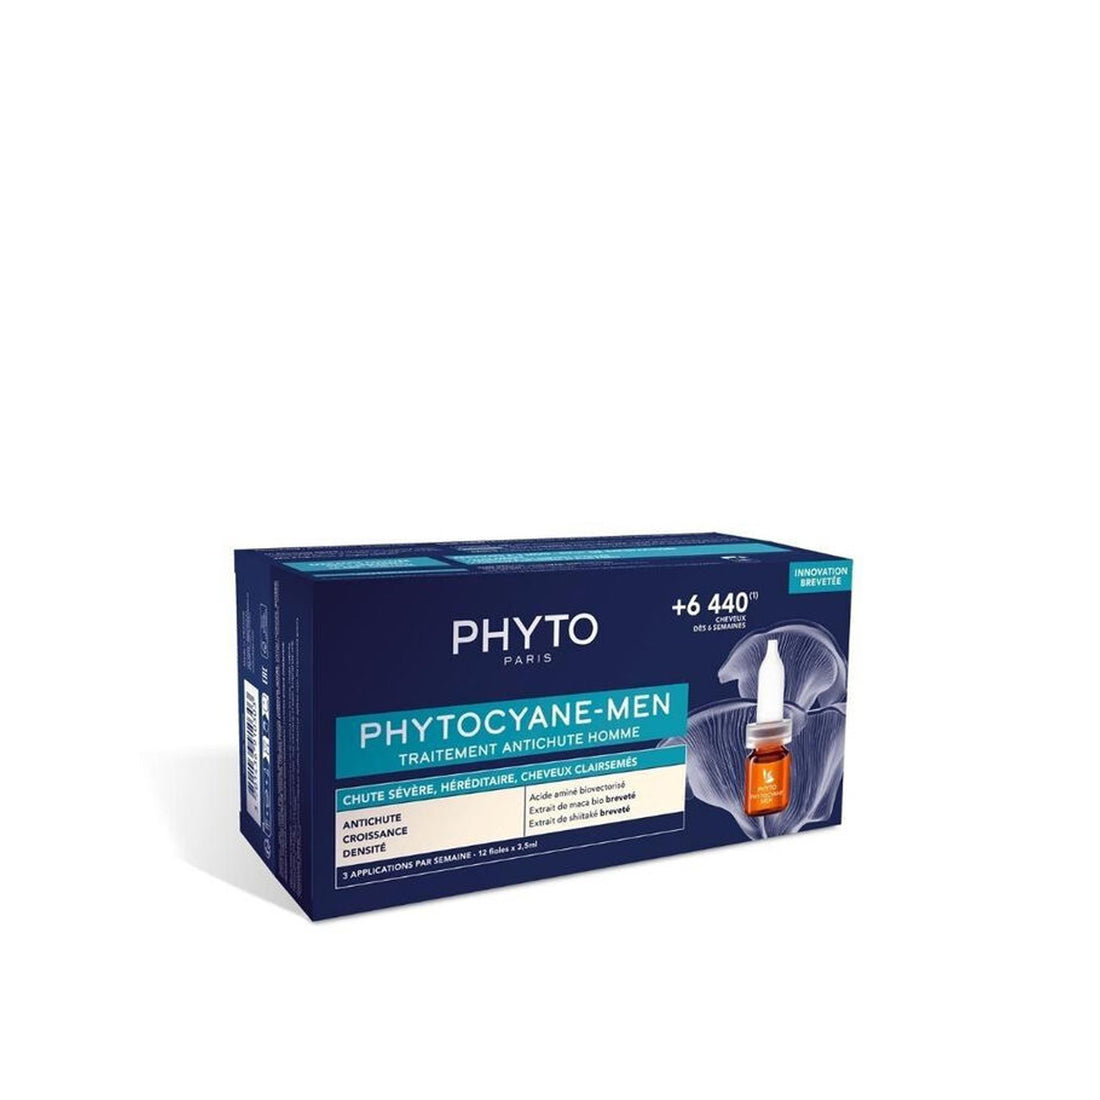 Phytocyane-Men Severe Hair Loss Treatment 12x3.5ml